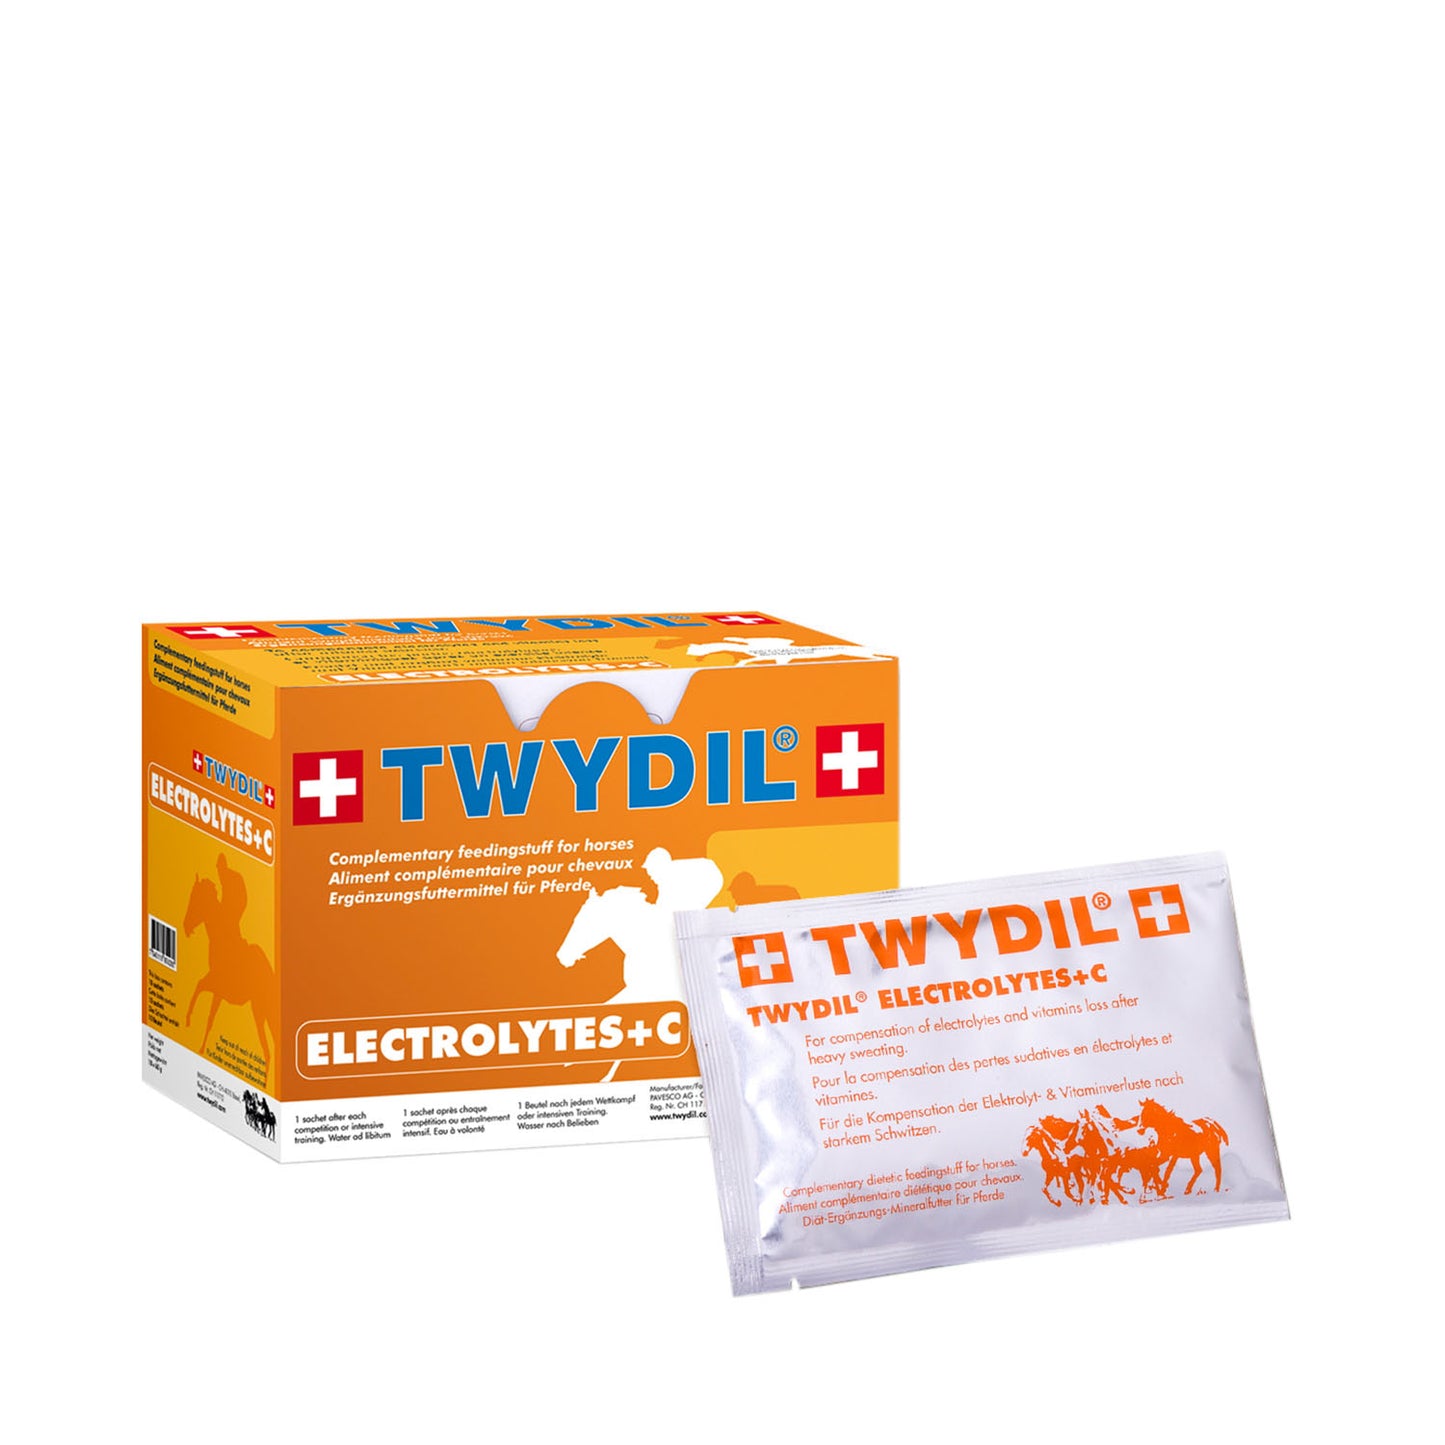 Twydil Electrolytes + C